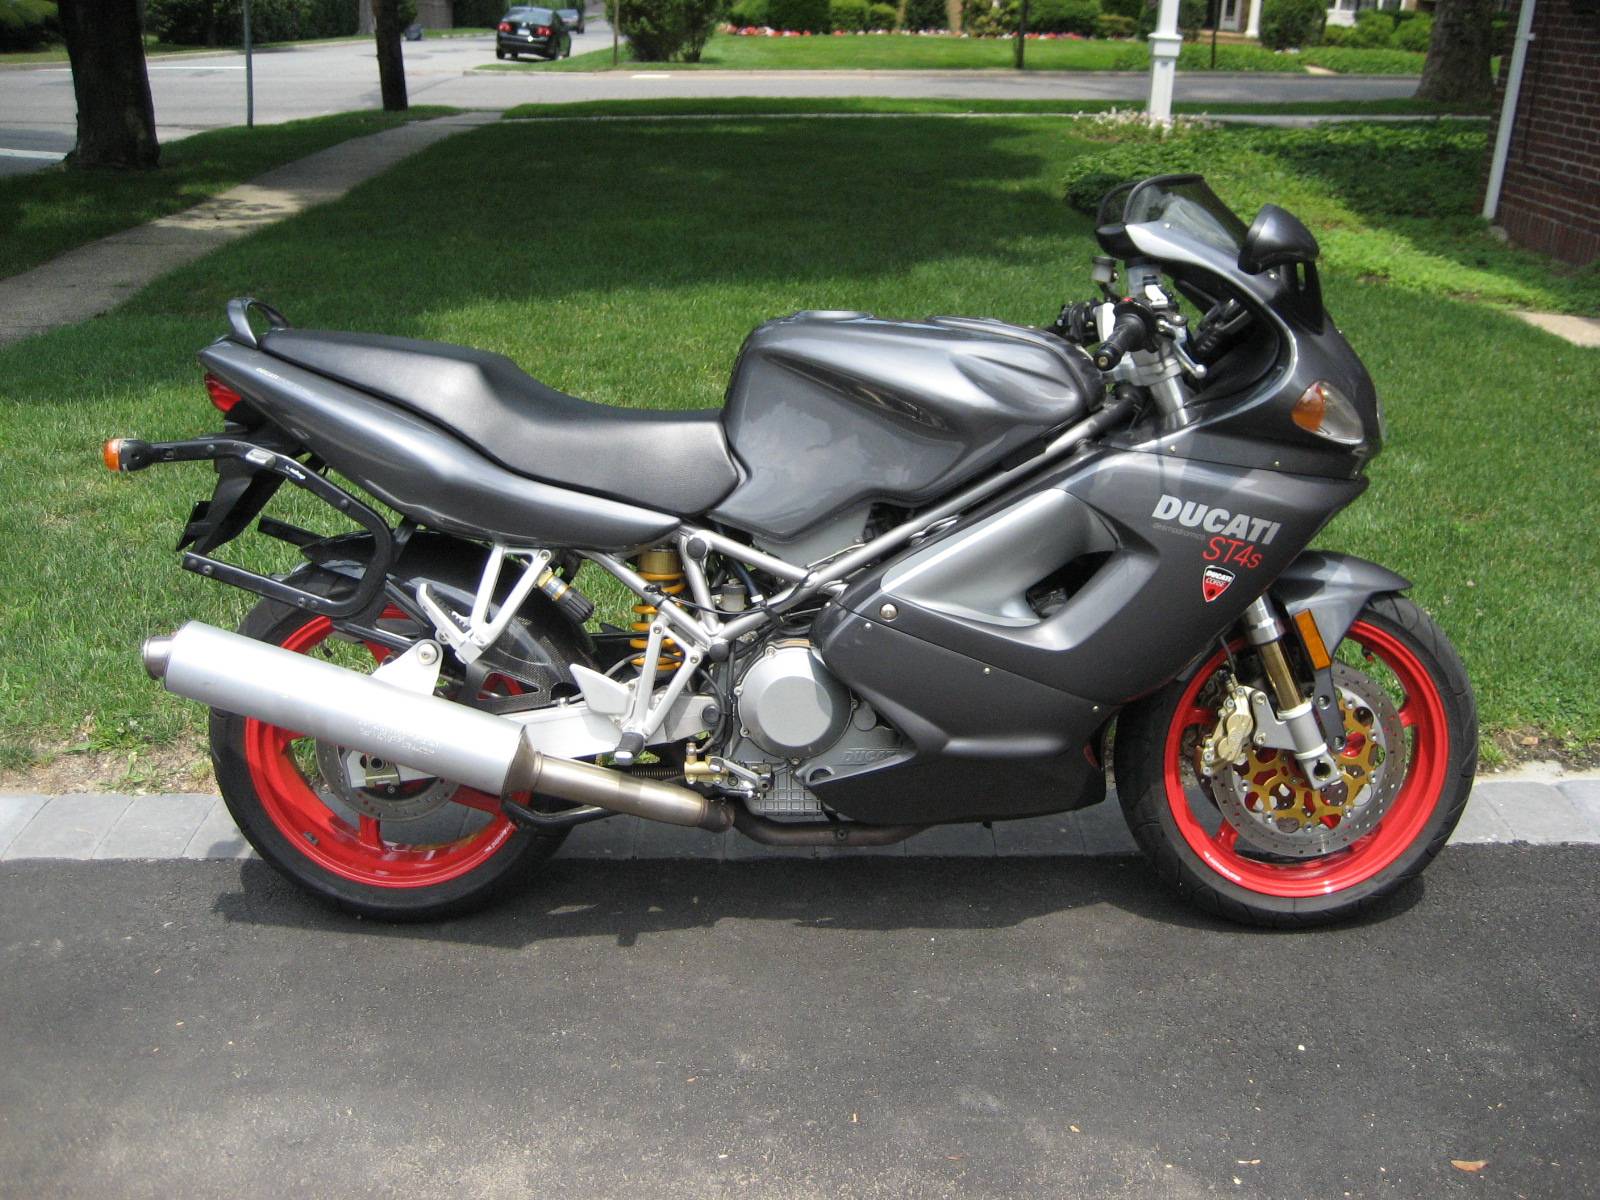 Мотоцикл ducati st4s abs 2003 цена, фото, характеристики, обзор, сравнение на базамото